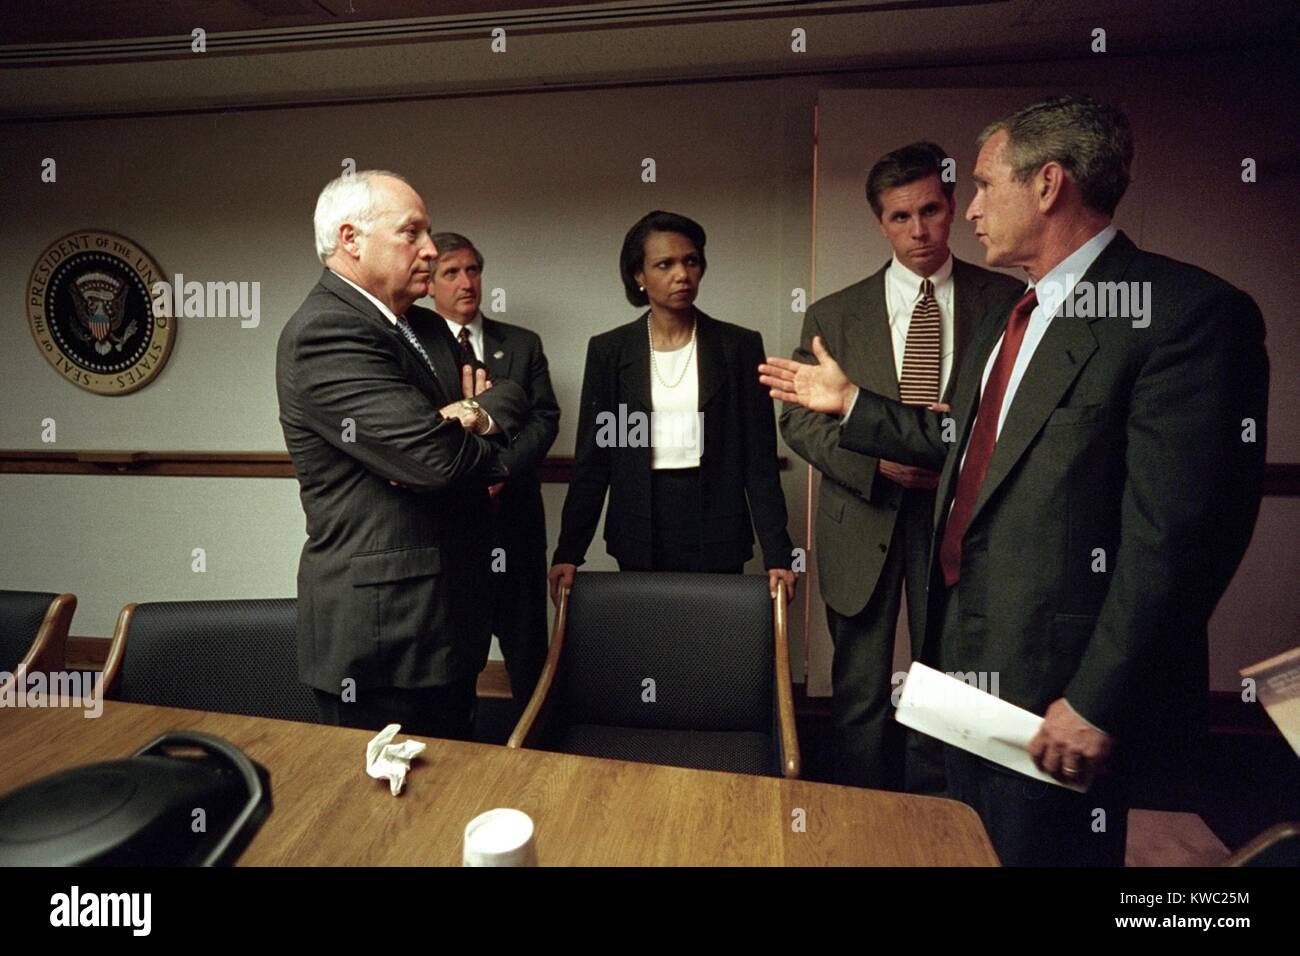 Treffen im Weißen Haus Emergency Operations Center, Sept. 11, 2001. Präsident George W. Bush trifft sich mit, von links: VP Dick Cheney; Stabschef Andy Card; Condoleeza Rice, die Nationale Sicherheitsberaterin, Special Agent Carl Truscott, der US-Geheimdienst. (BSLOC 2015 2 140) Stockfoto